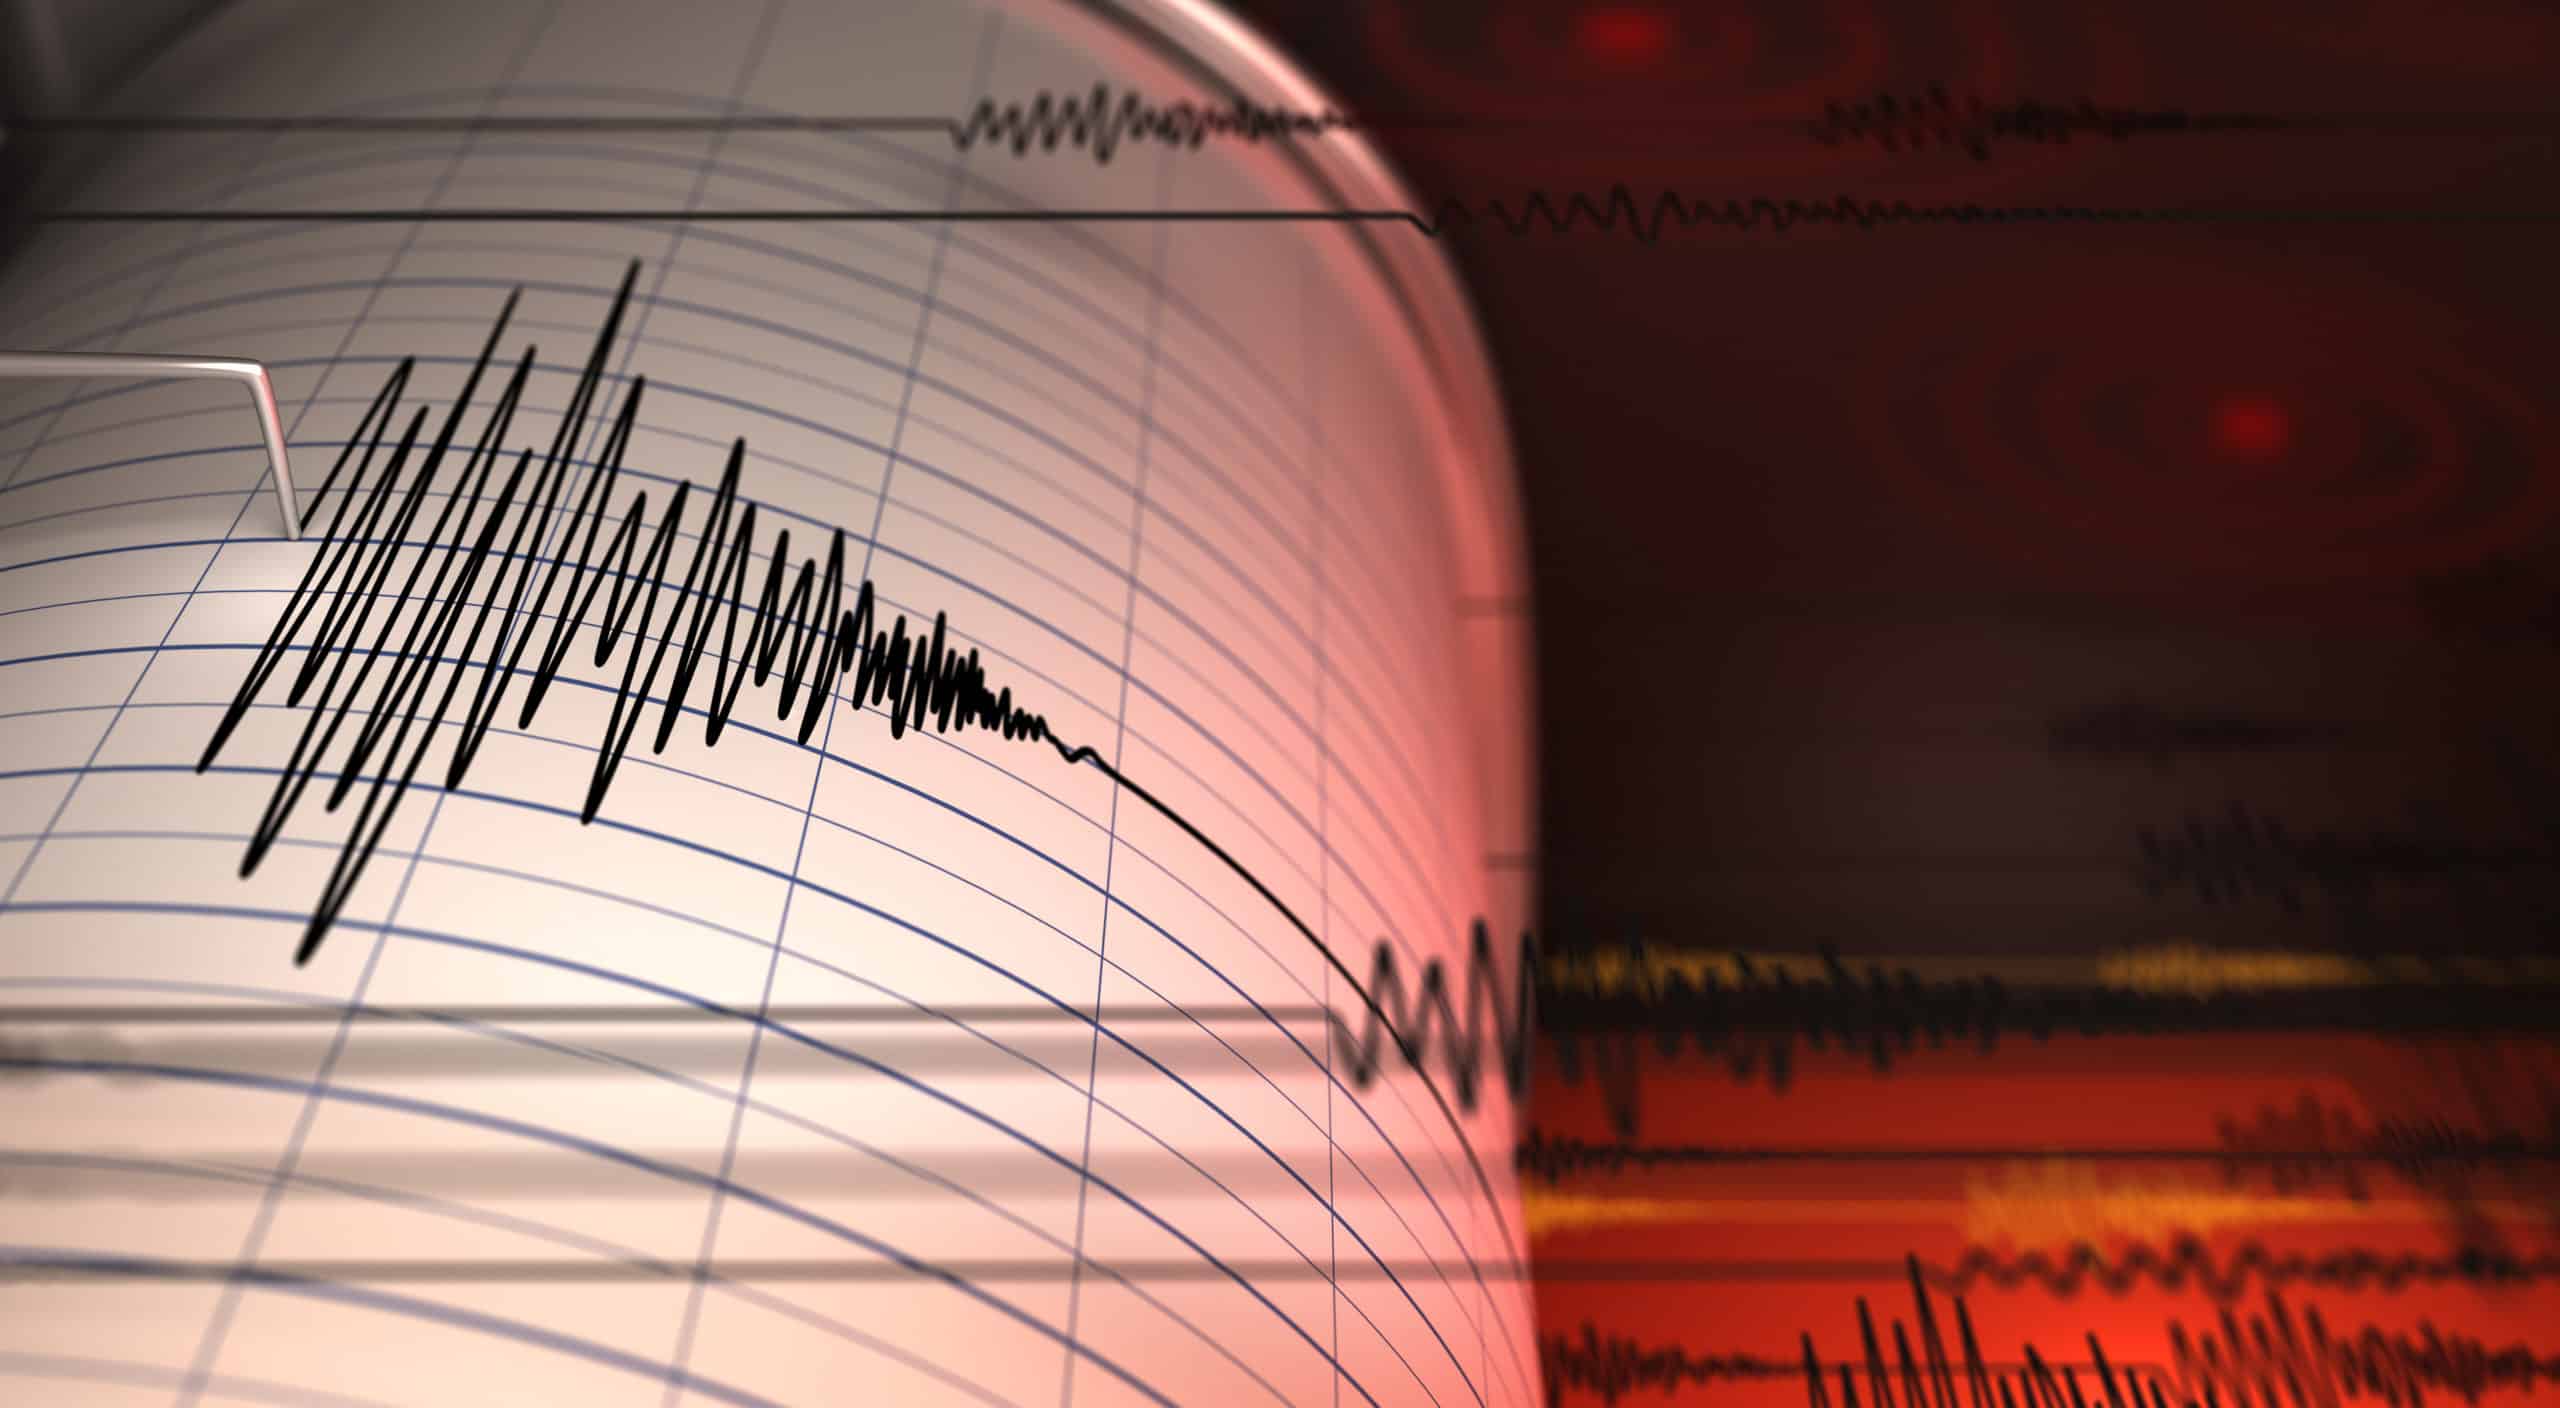 דיווח ראשוני: רעידת אדמה התרחשה סמוך לבית שאן